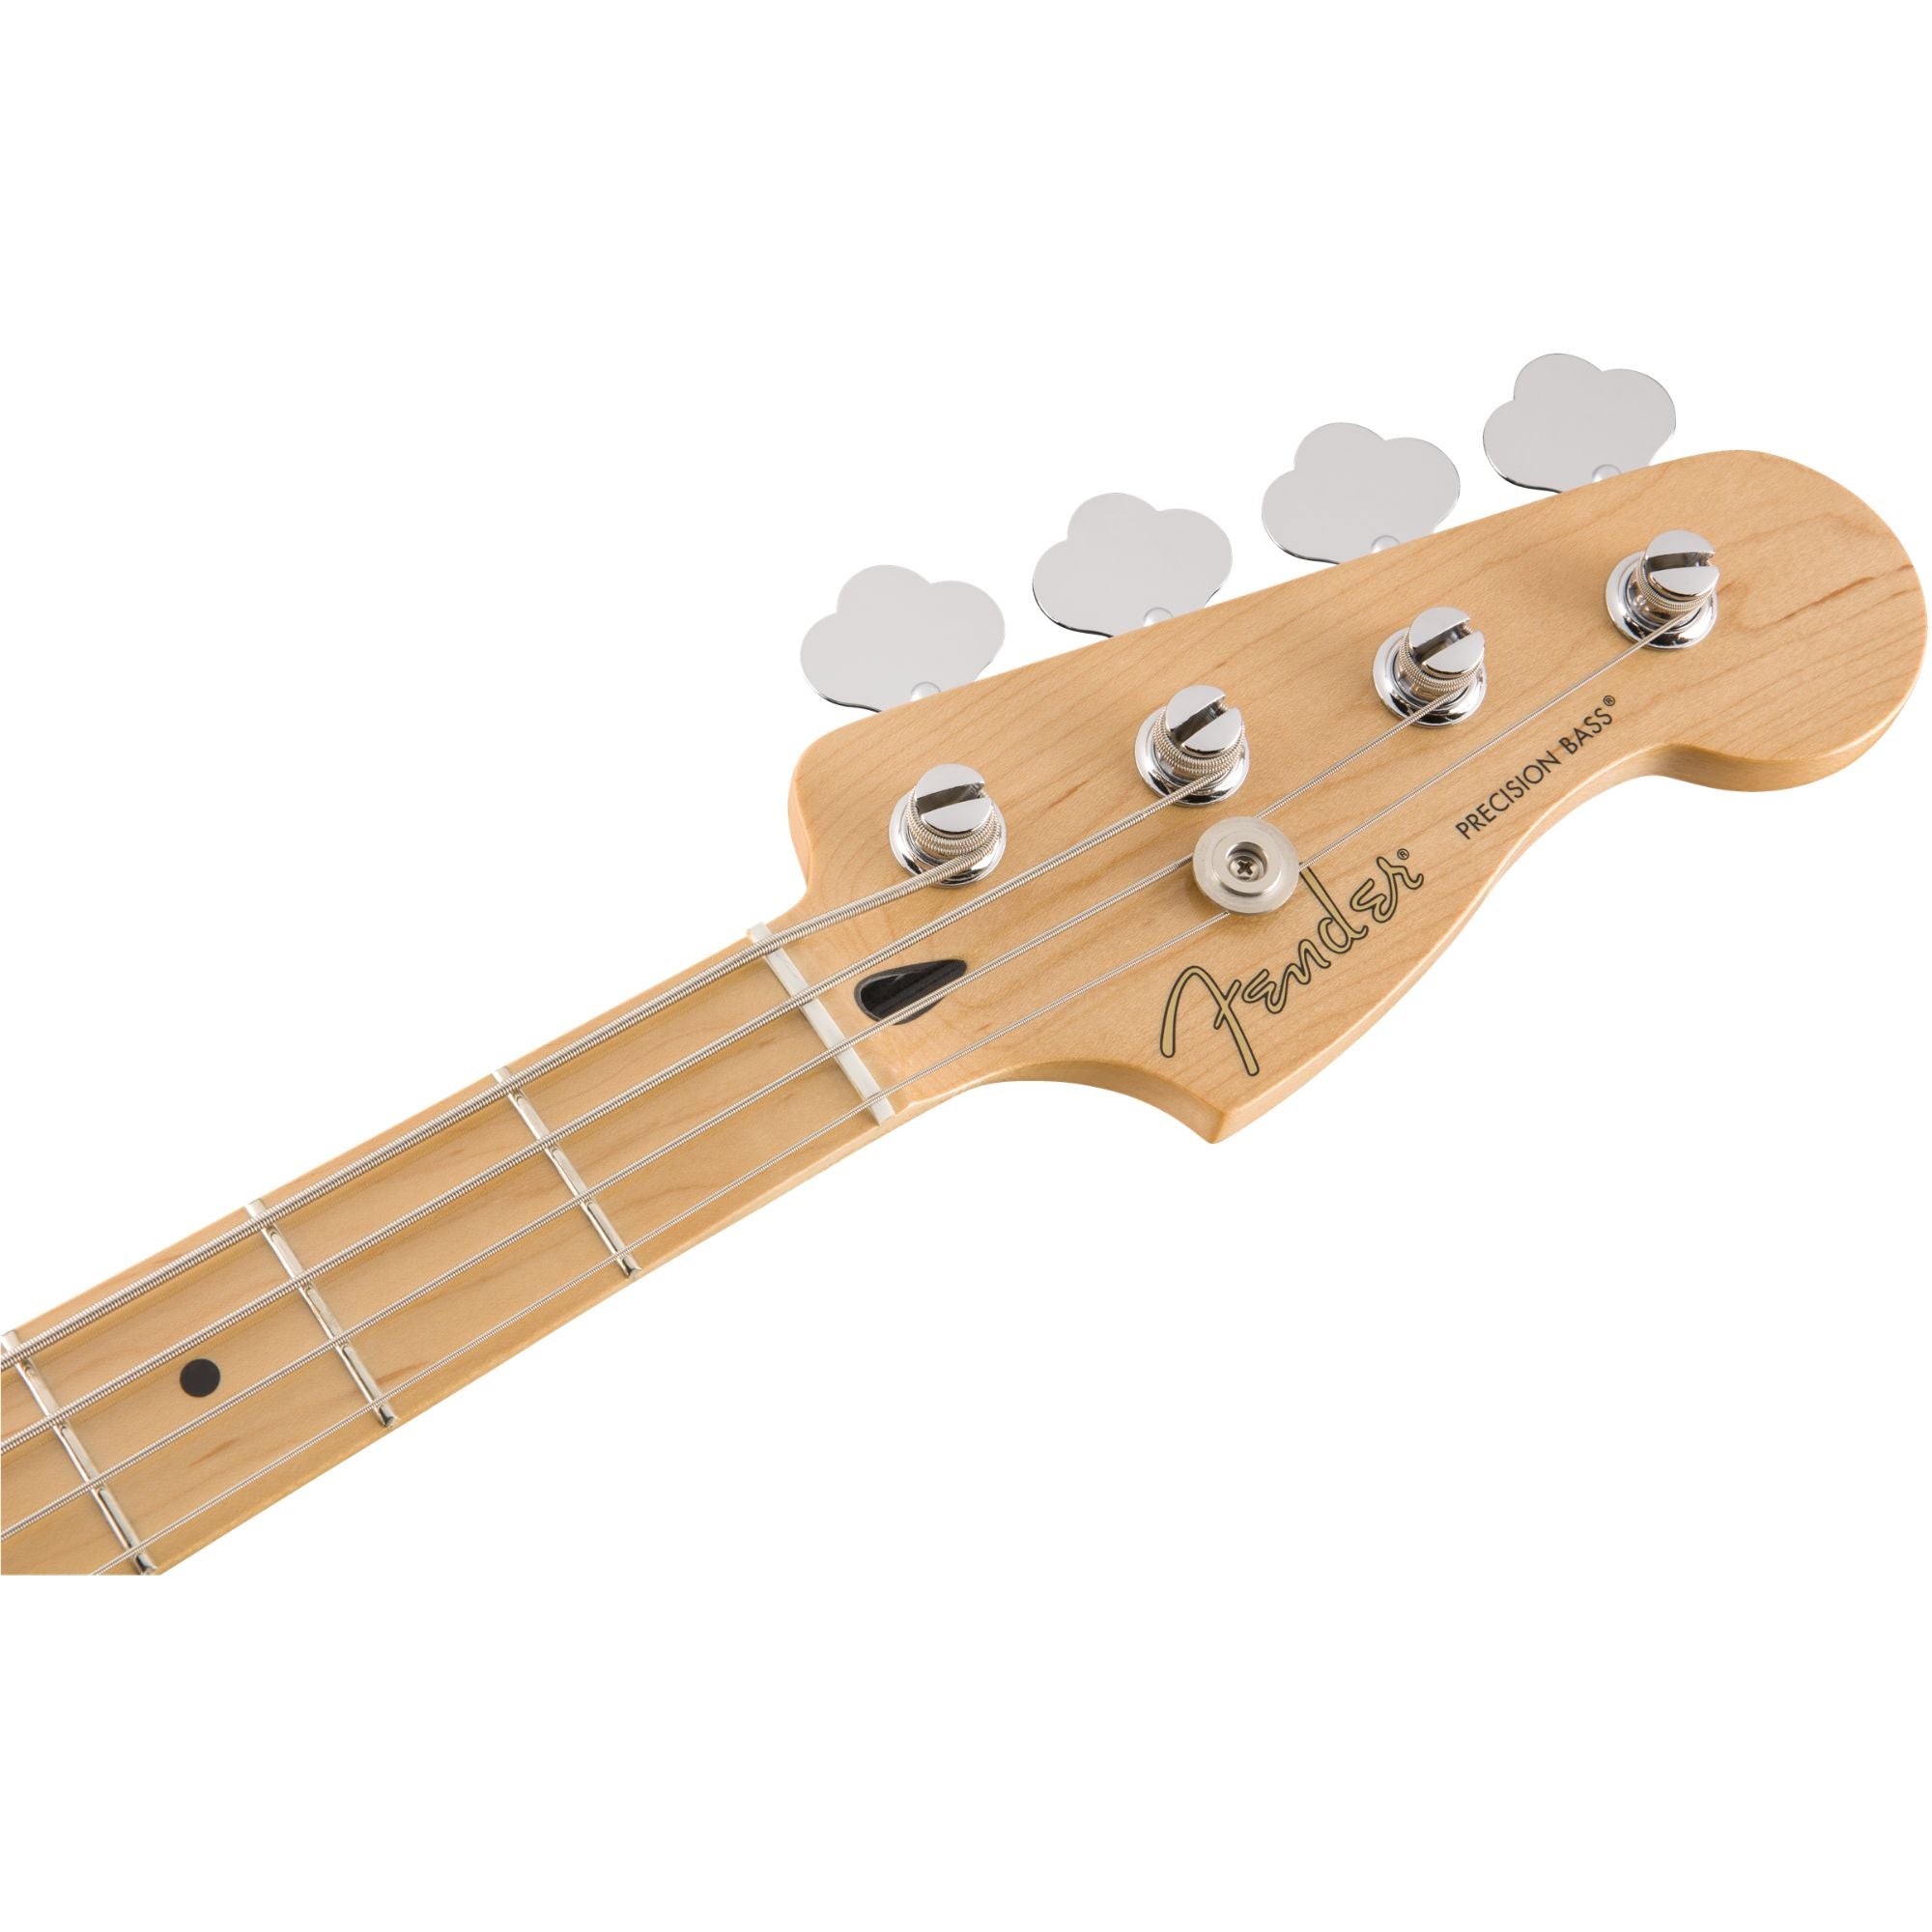 Fender Player Precision Bass, Buttercream